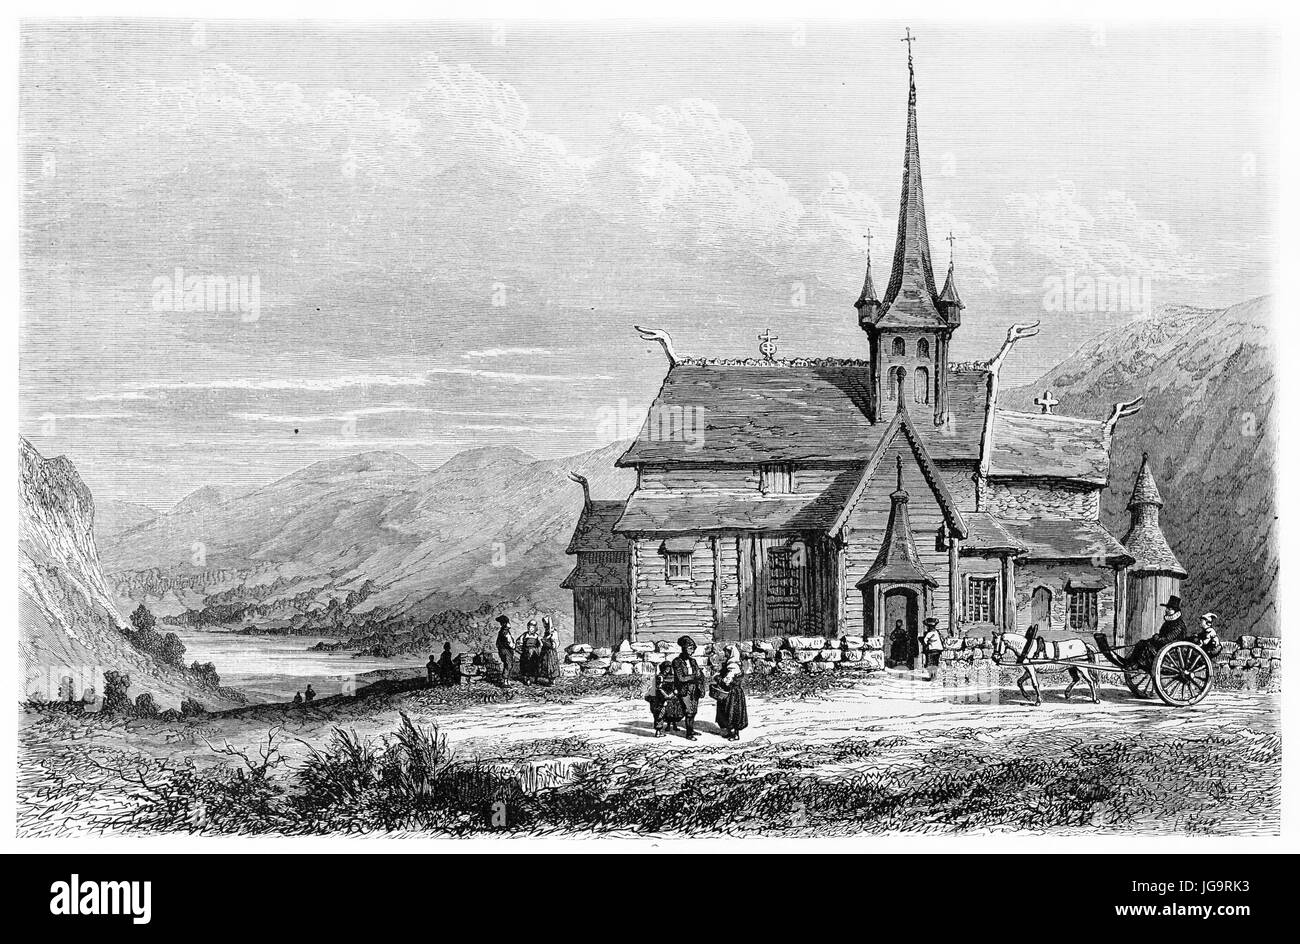 L'église en bois pointée de LOM, en Norvège, face à un vaste paysage de montagne. Art de style gravure de tons gris antique par Girardet, le Tour du monde, 1861 Banque D'Images